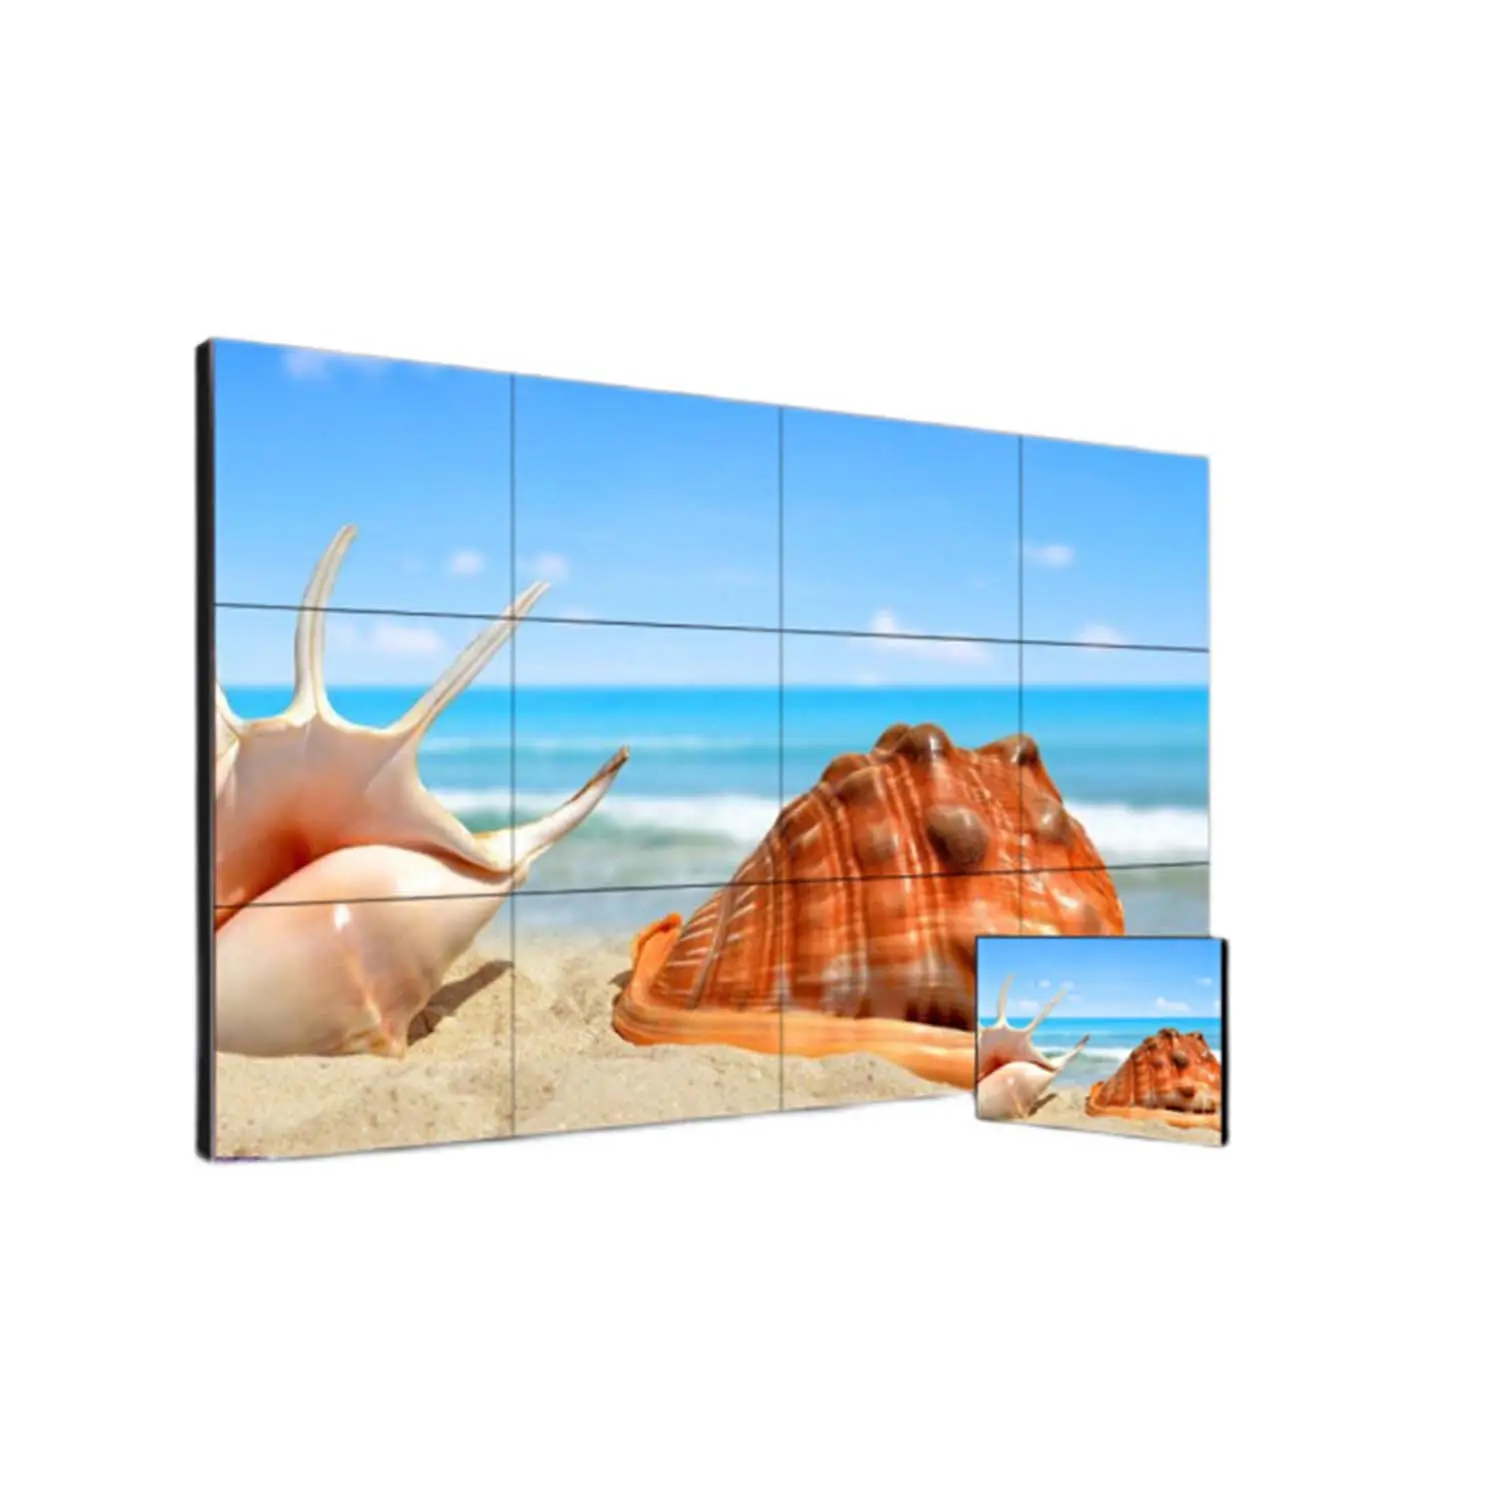 טלוויזיה LCDS S-IPS LG תצוגה פאנל צג טלוויזיה צמוד קיר צג טלוויזיה למכירה חמה 47 אינץ' מסך LCD Led מקורה צילום LCD מודול 50k,50k